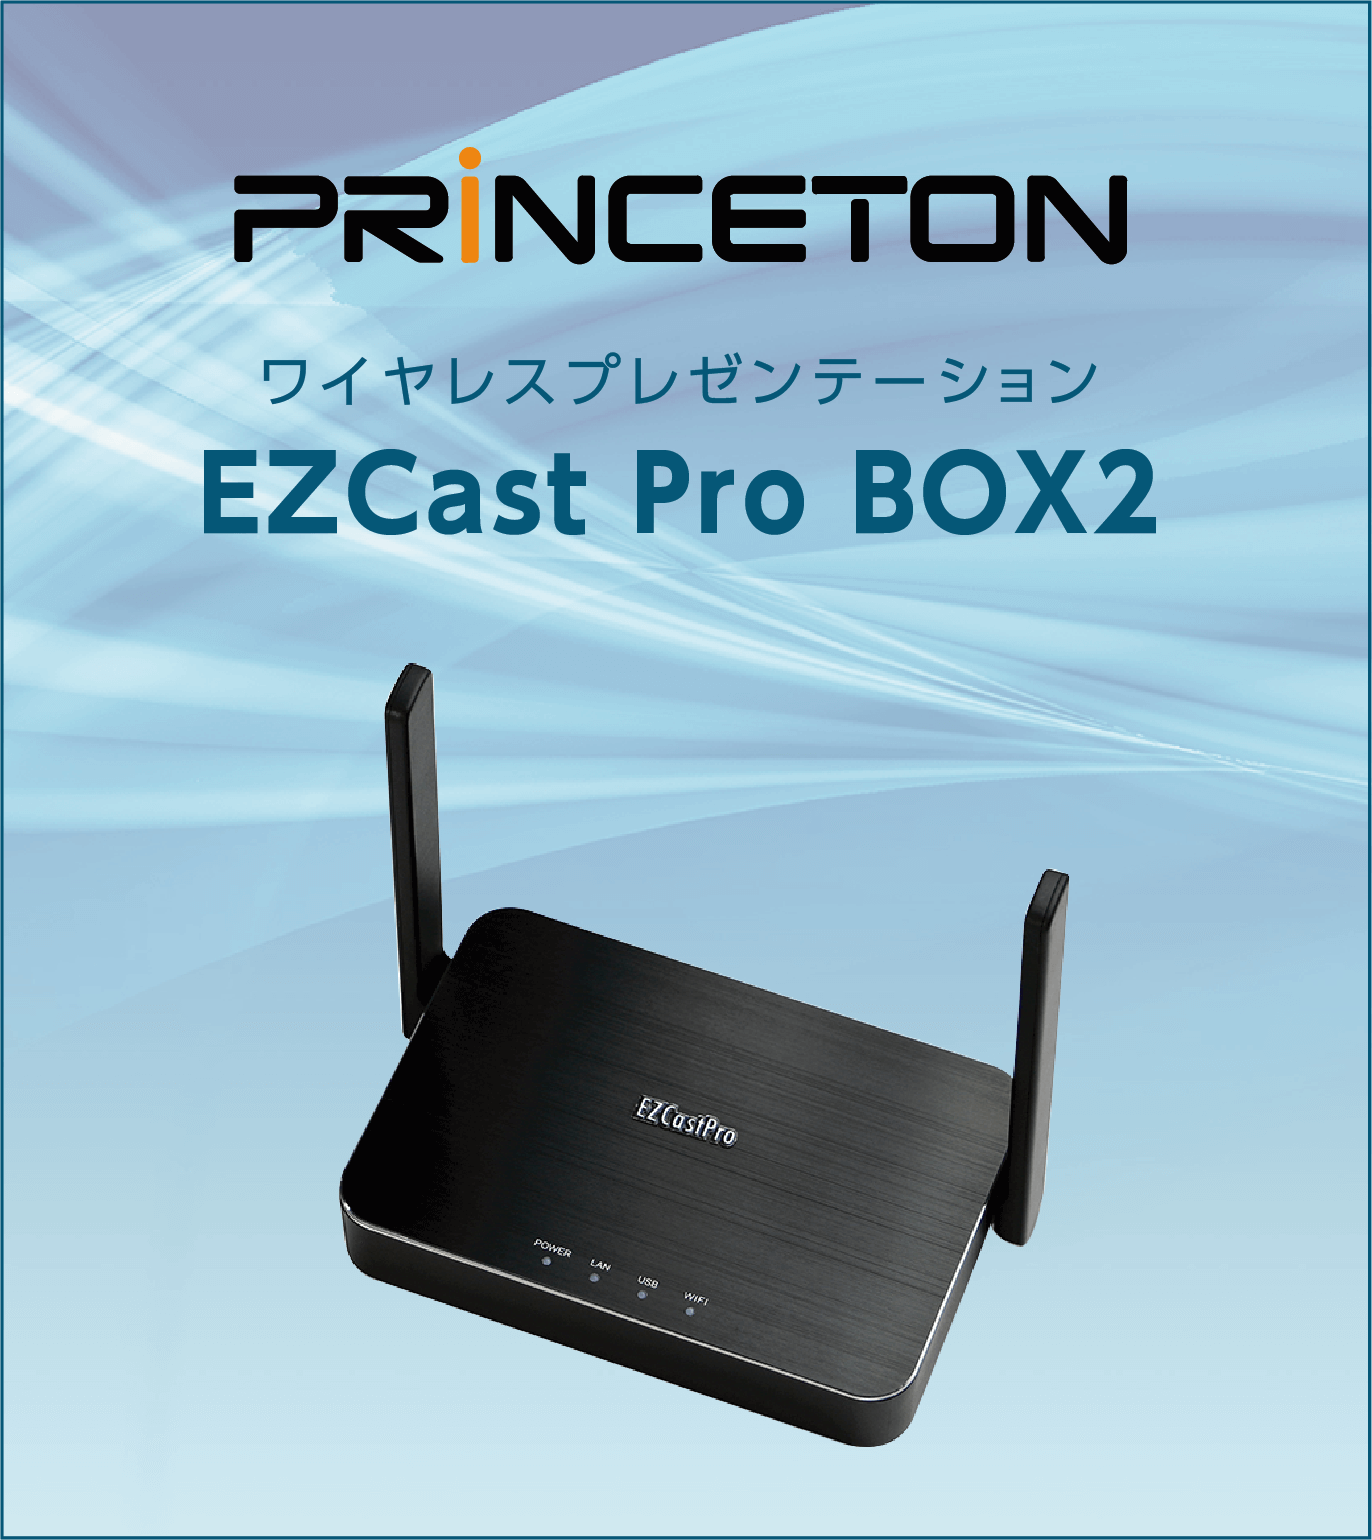 プリンストン ワイヤレスプレゼンテーション EZCast Pro BOX2 EZPRO-BOX2-B10N